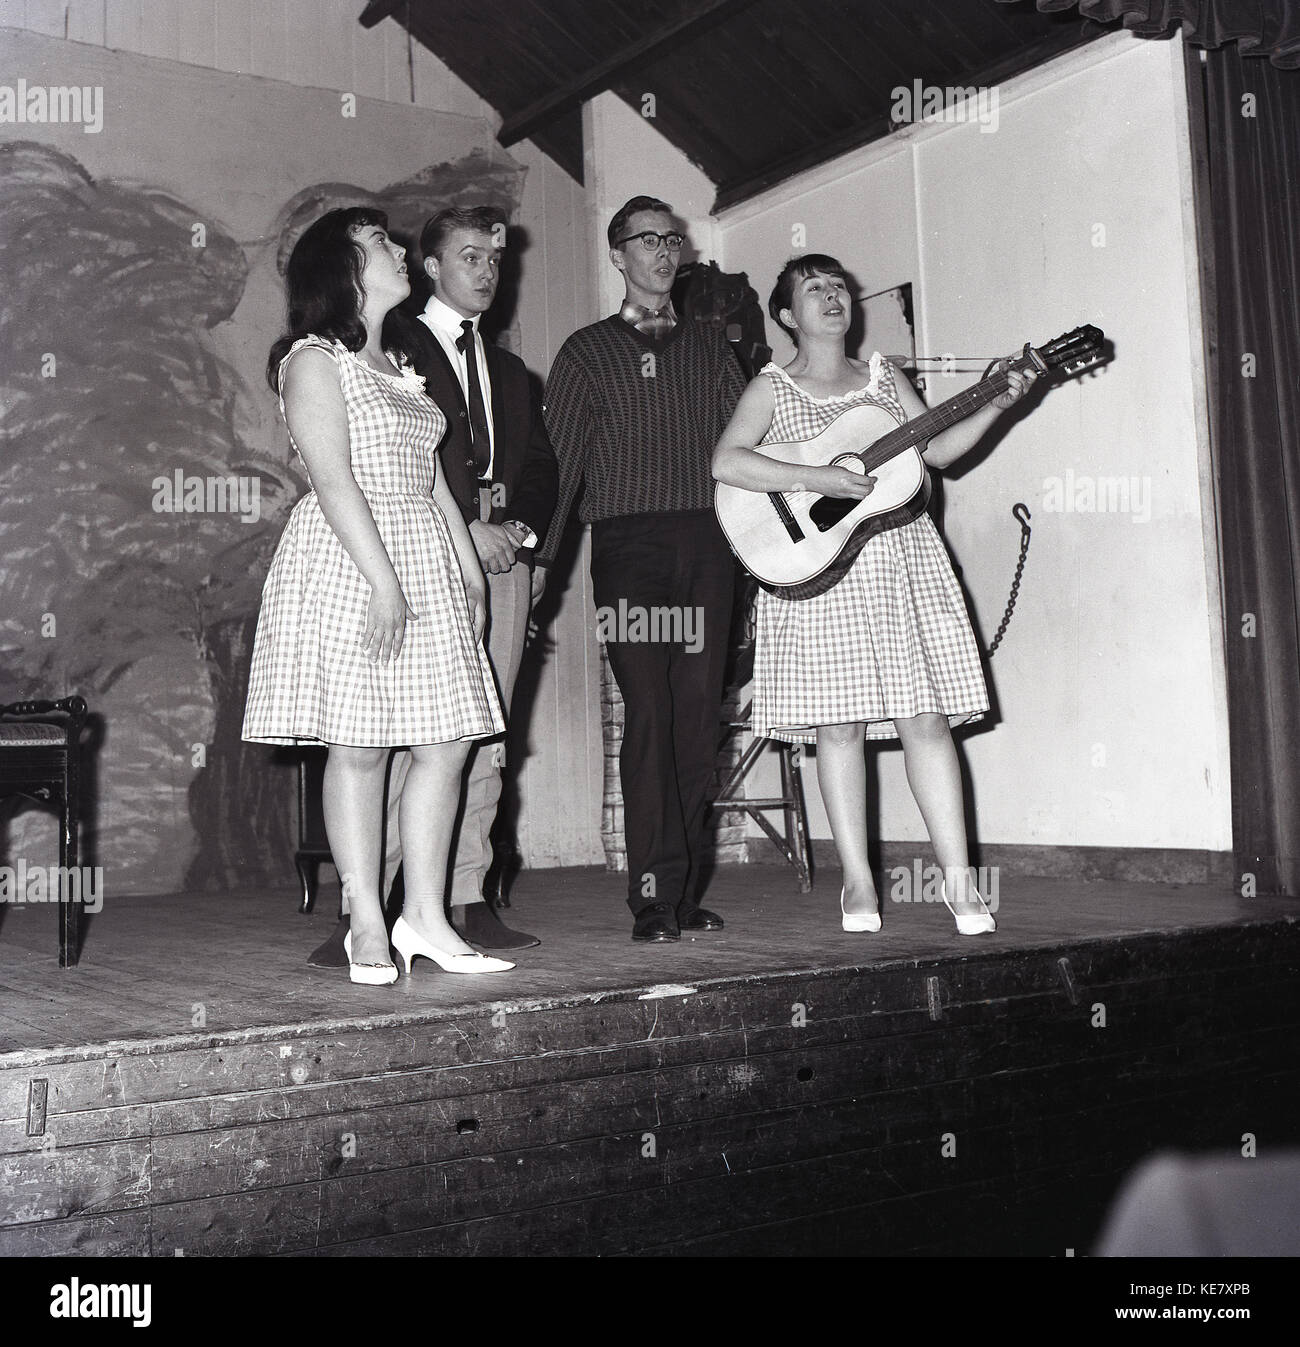 1960, histórico, cuatro adultos jóvenes cantantes masculinos y femeninos, uno con la guitarra, en el escenario del barrio Assembley Hall, Aylesbury, Bucks, Inglaterra. Foto de stock